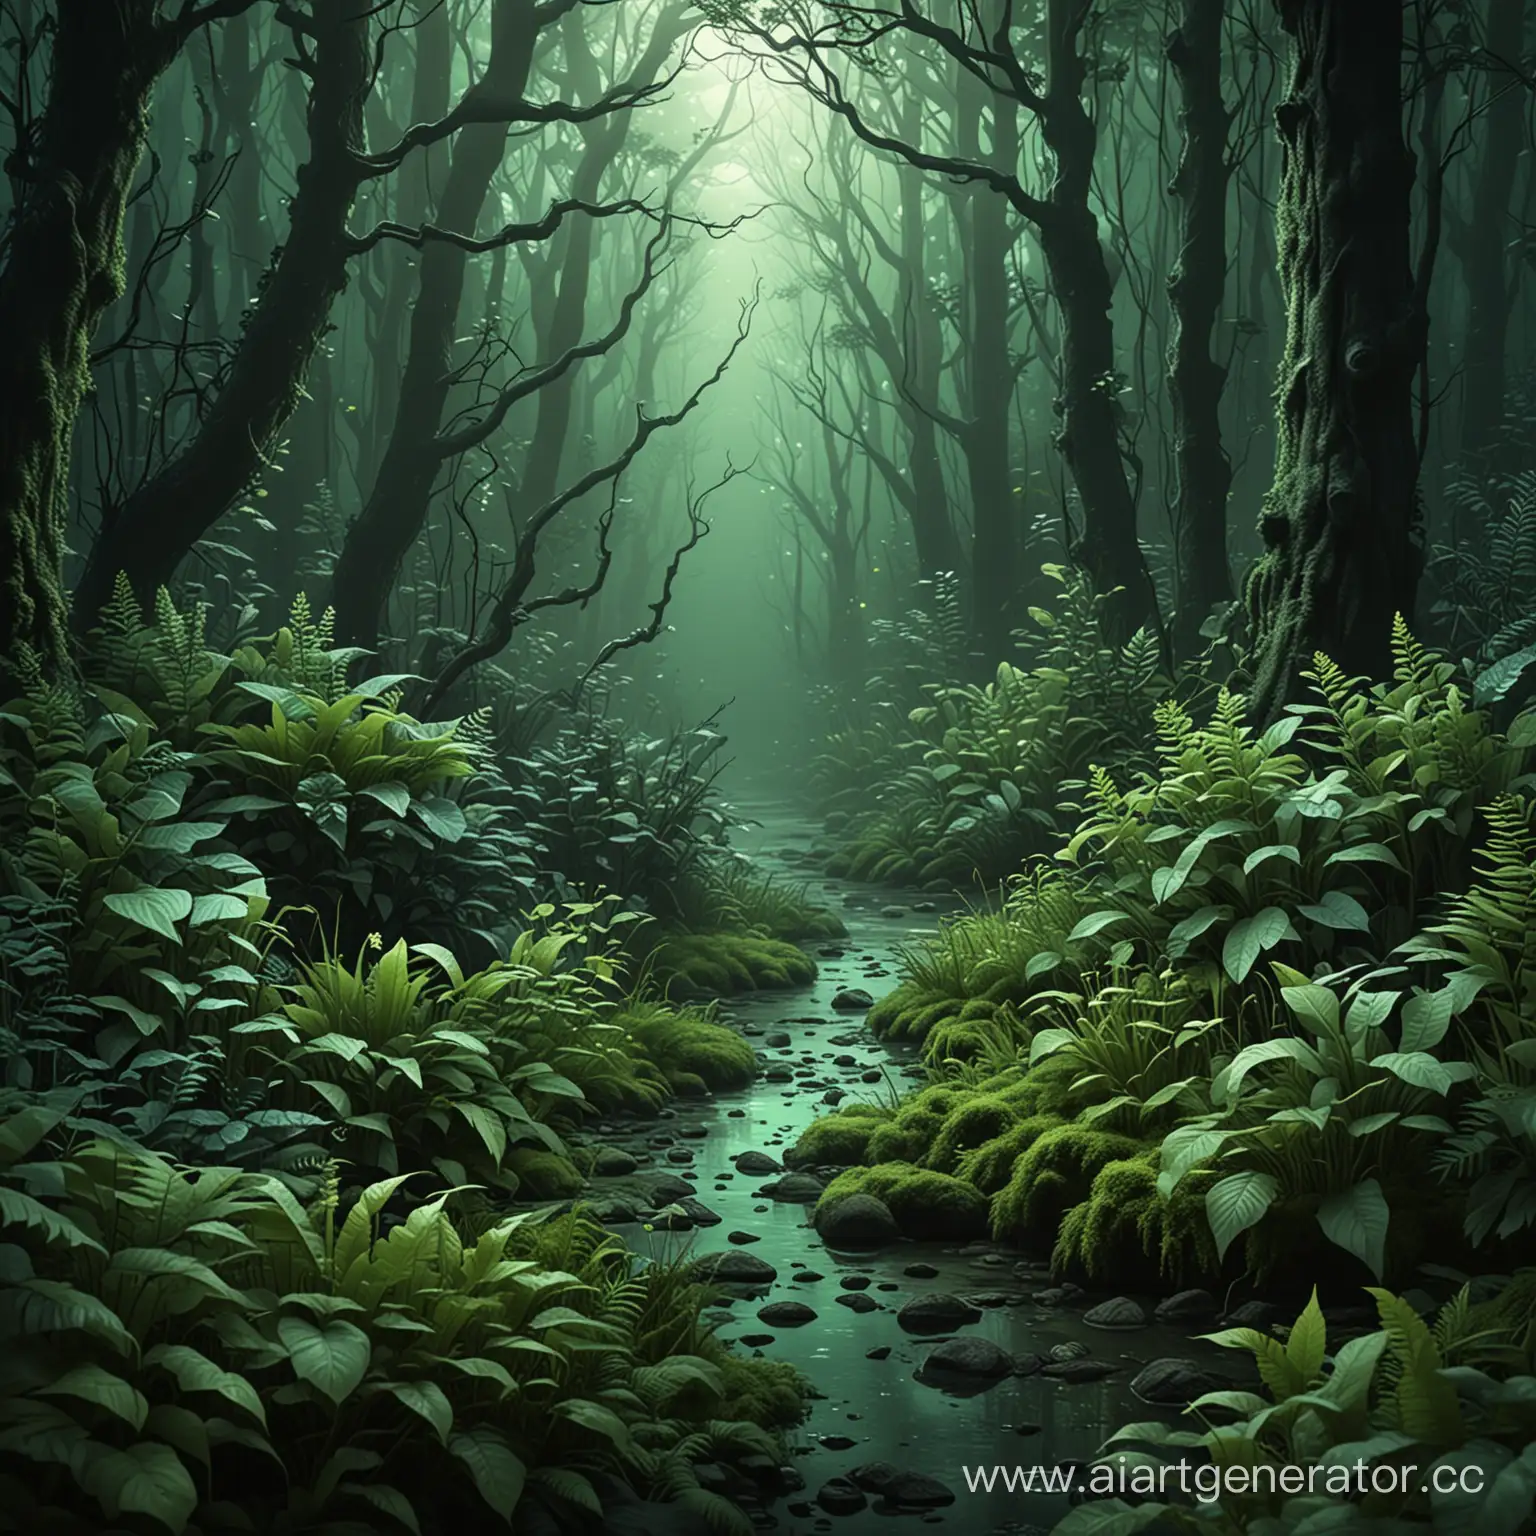 сделать реалистичный фон с загадочным лесом и необычными светящимися растениями в зеленой цветовой гамме